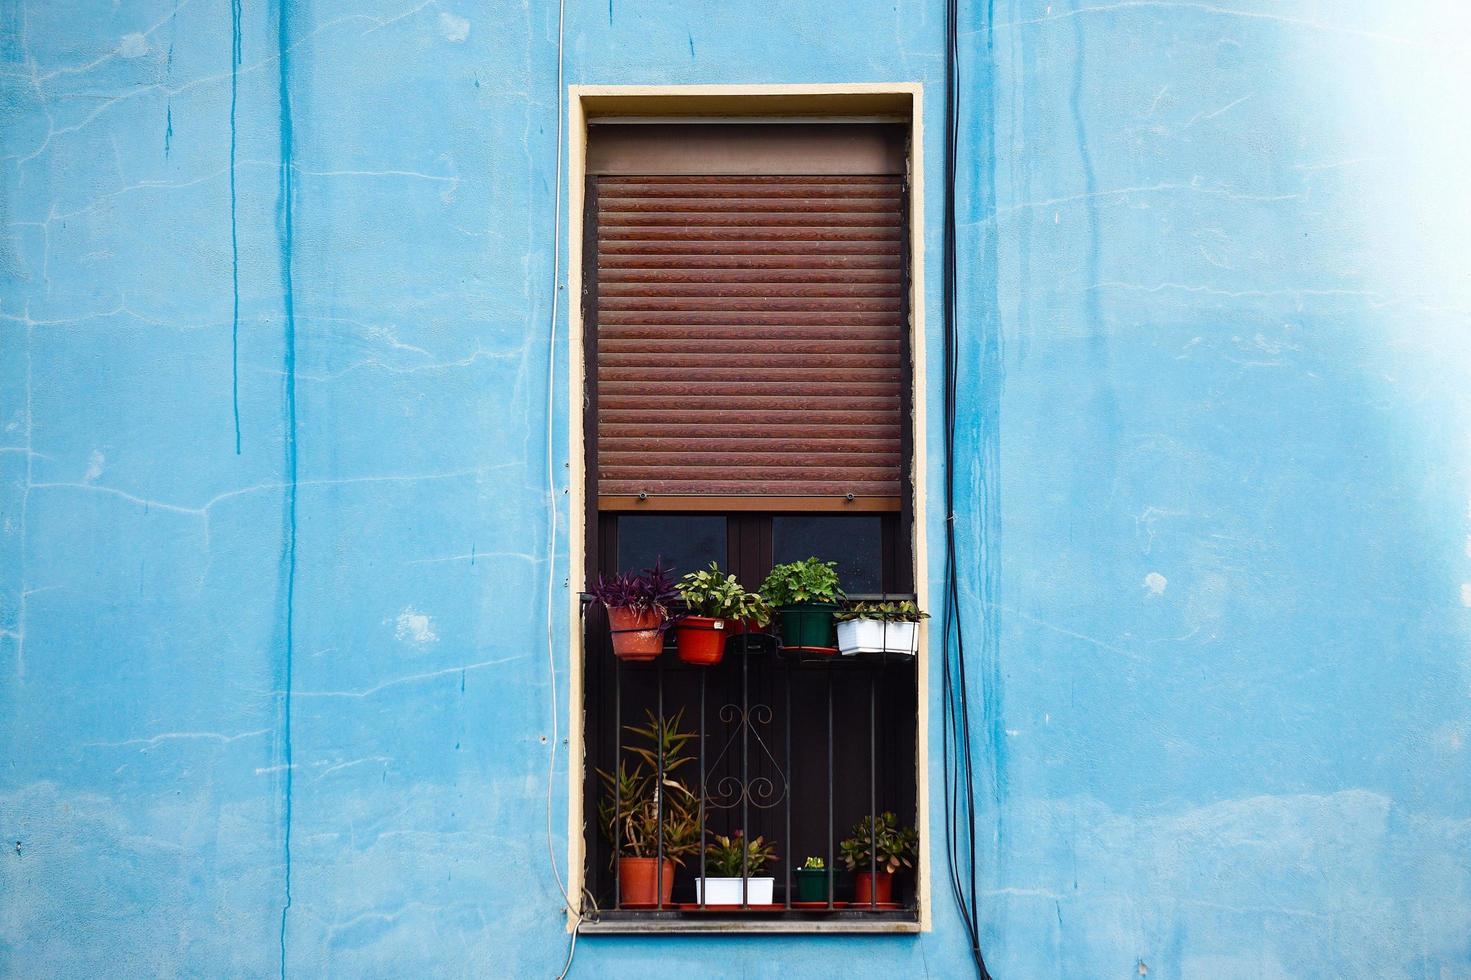 venster op de blauwe gevel van het huis, architectuur in de stad Bilbao, Spanje foto